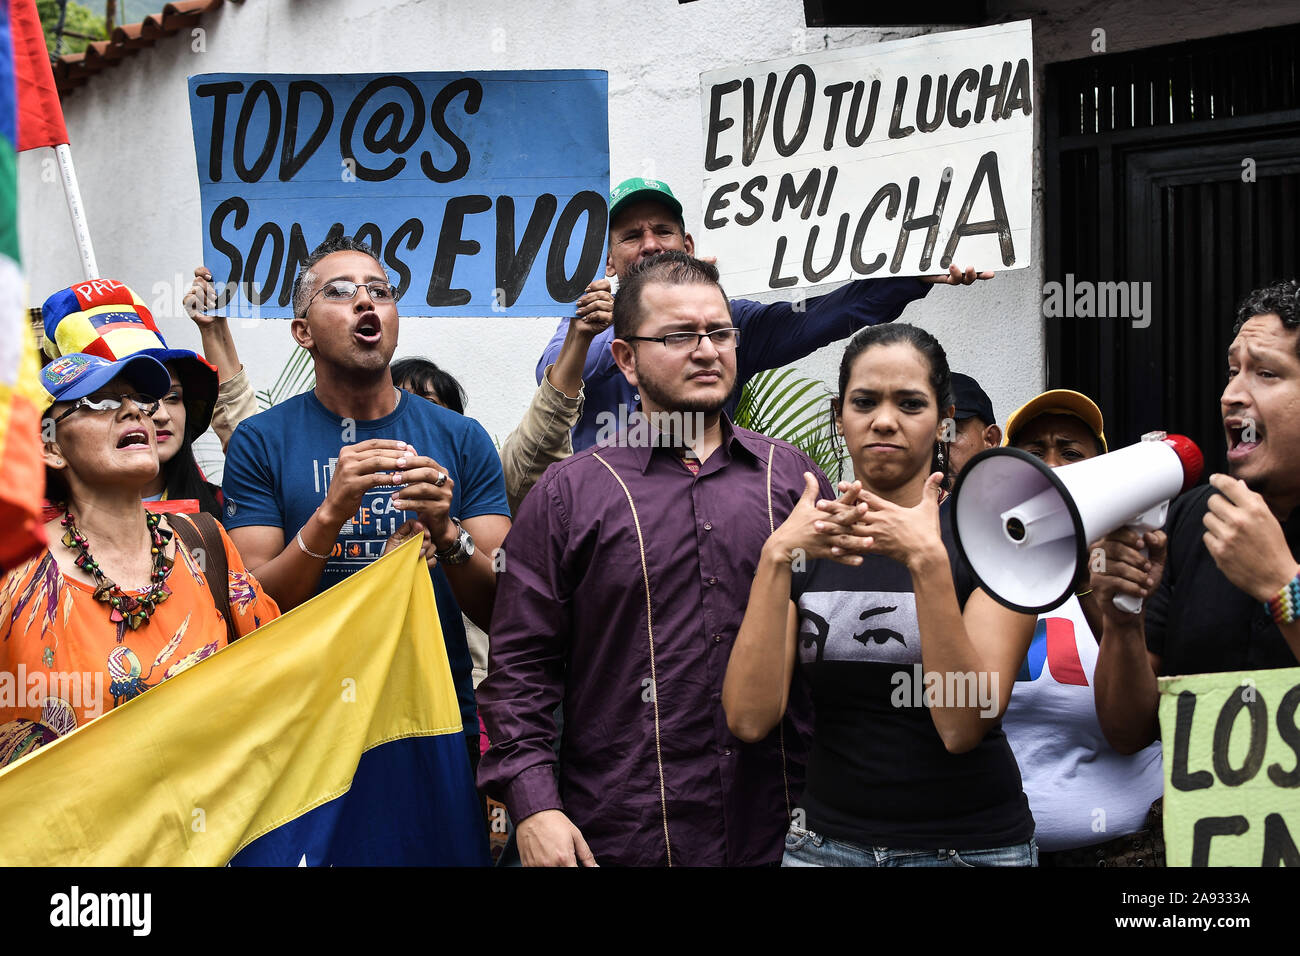 Sostenitori gridare slogan durante la protesta.i sostenitori dei movimenti sociali e il venezuelano della gioventù comunista protesta a sostegno dell ex presidente Evo Morales di fronte all'ambasciata boliviana. Il presidente del paese si è dimesso dopo una forte protesta contro la sua rielezione e per aver rifiutato di condurre una verifica dei voti. Foto Stock